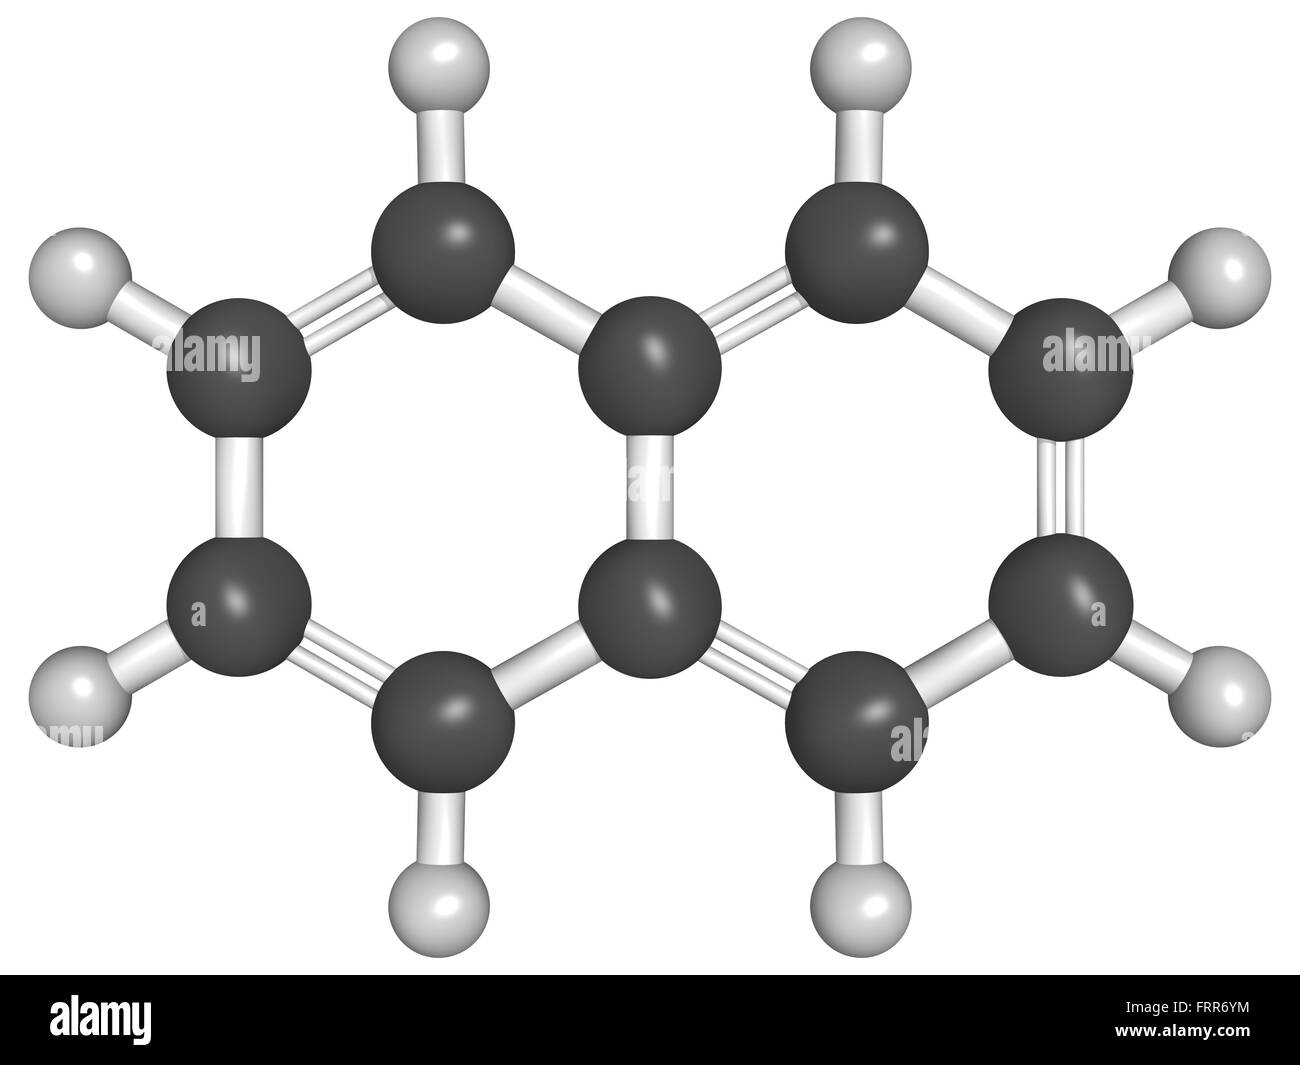 Struttura chimica di naftalene, un ingrediente di naftalina Foto Stock